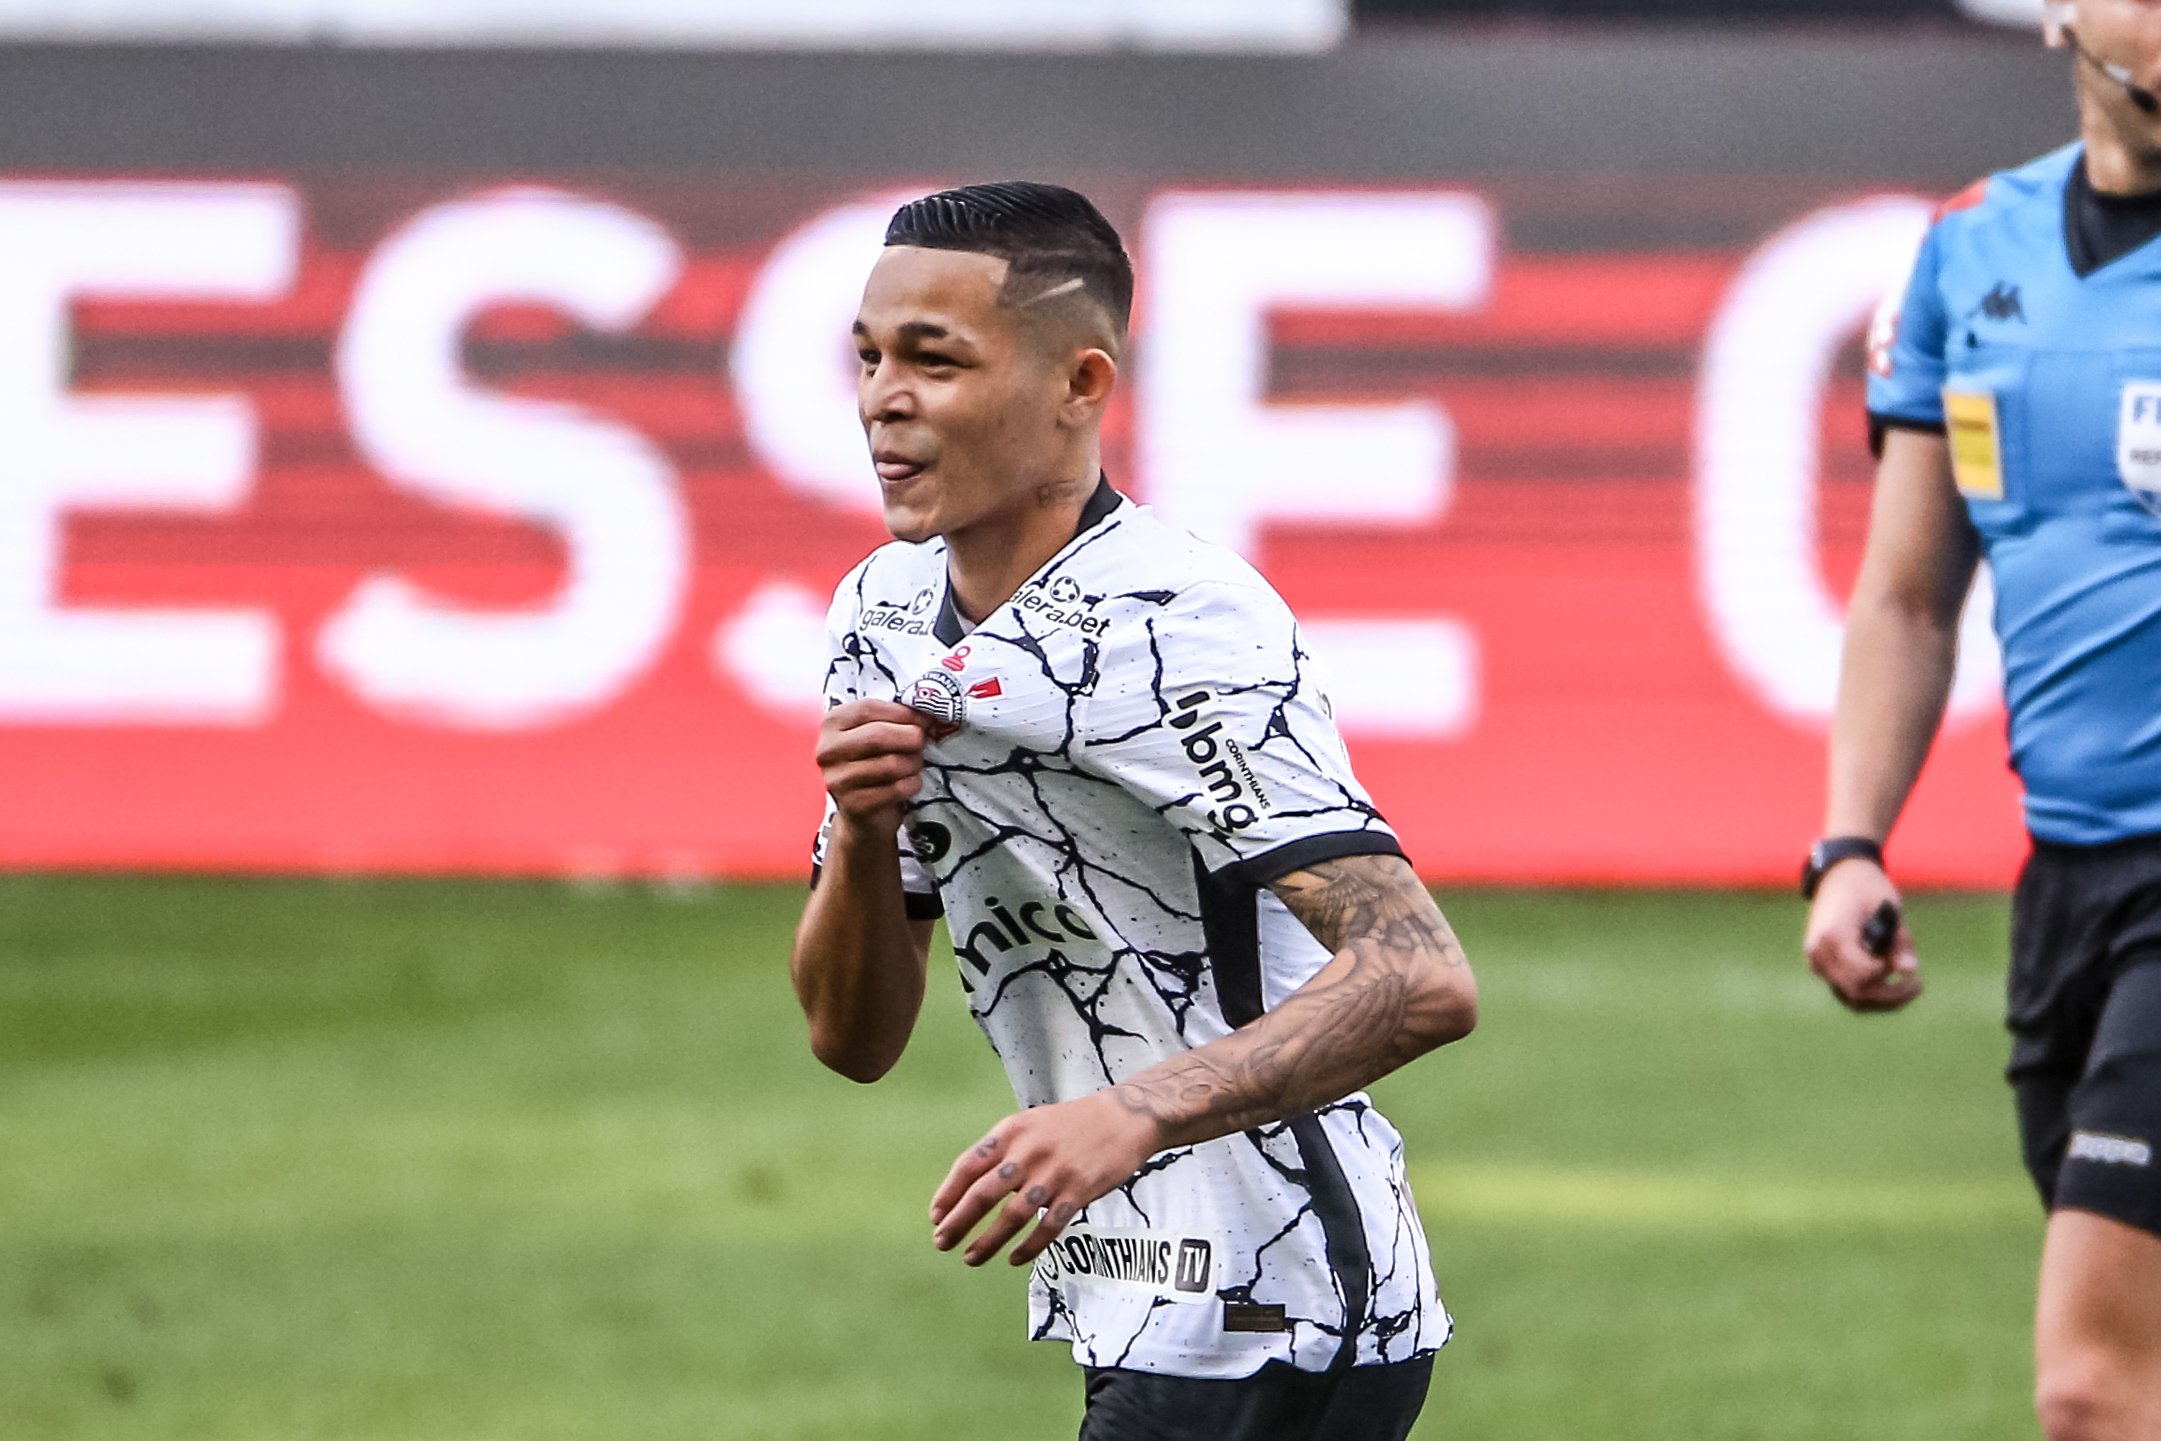 Adson marcou dois gols contra o Ceará  (Foto: Reprodução / Twitter)